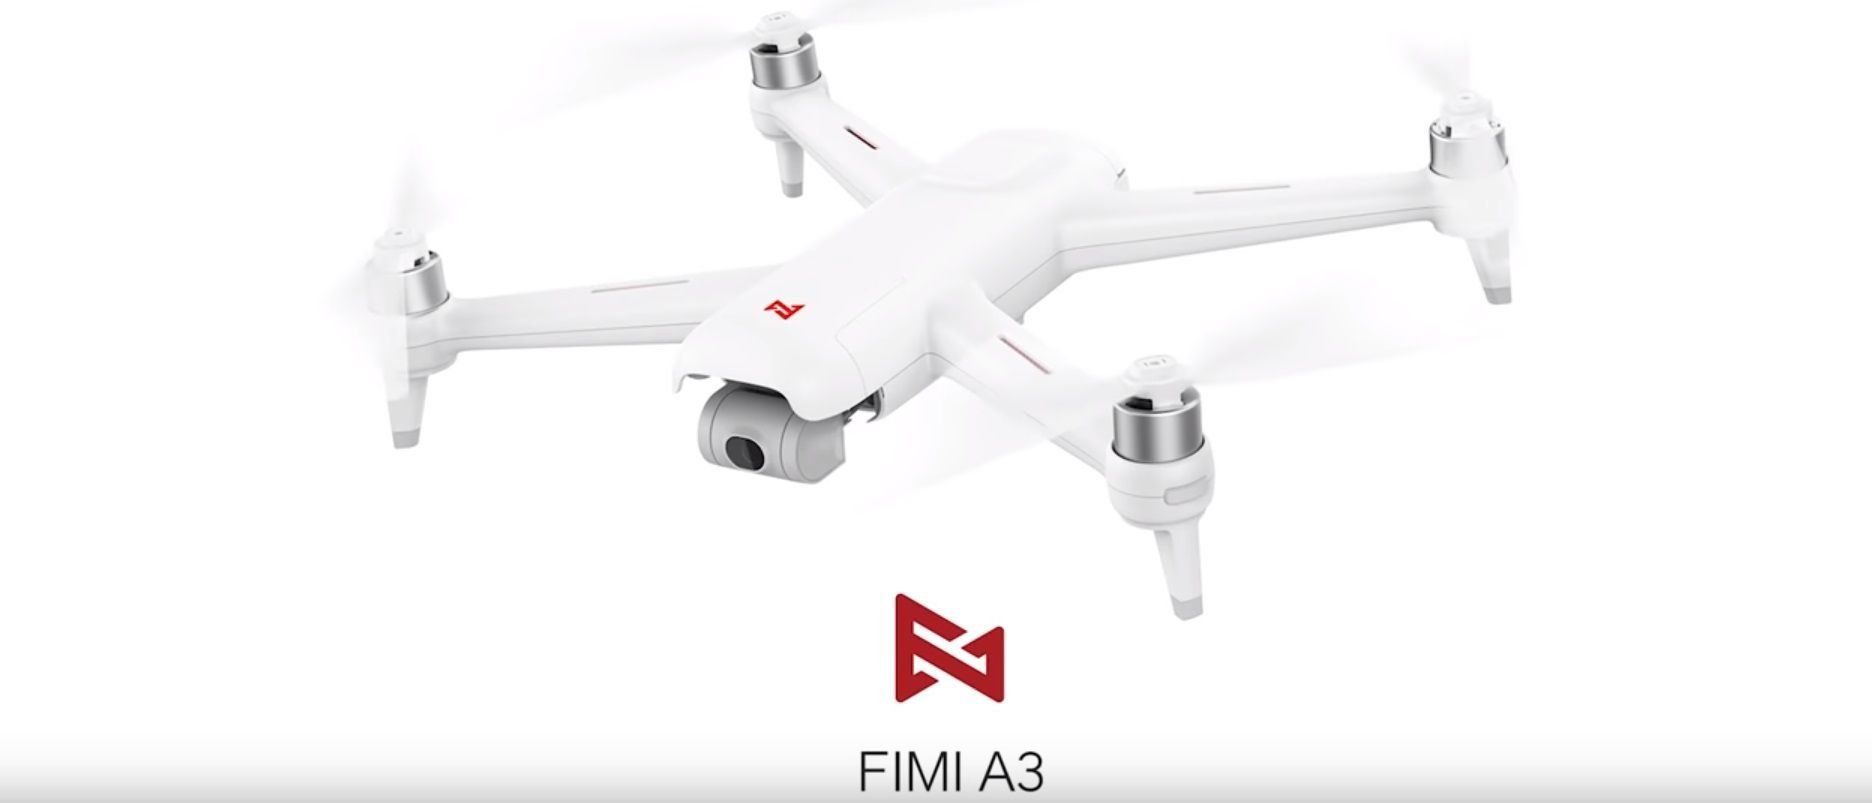 Επανεξέταση του Xiaomi FIMI A3 quadrocopter με πλεονεκτήματα και μειονεκτήματα